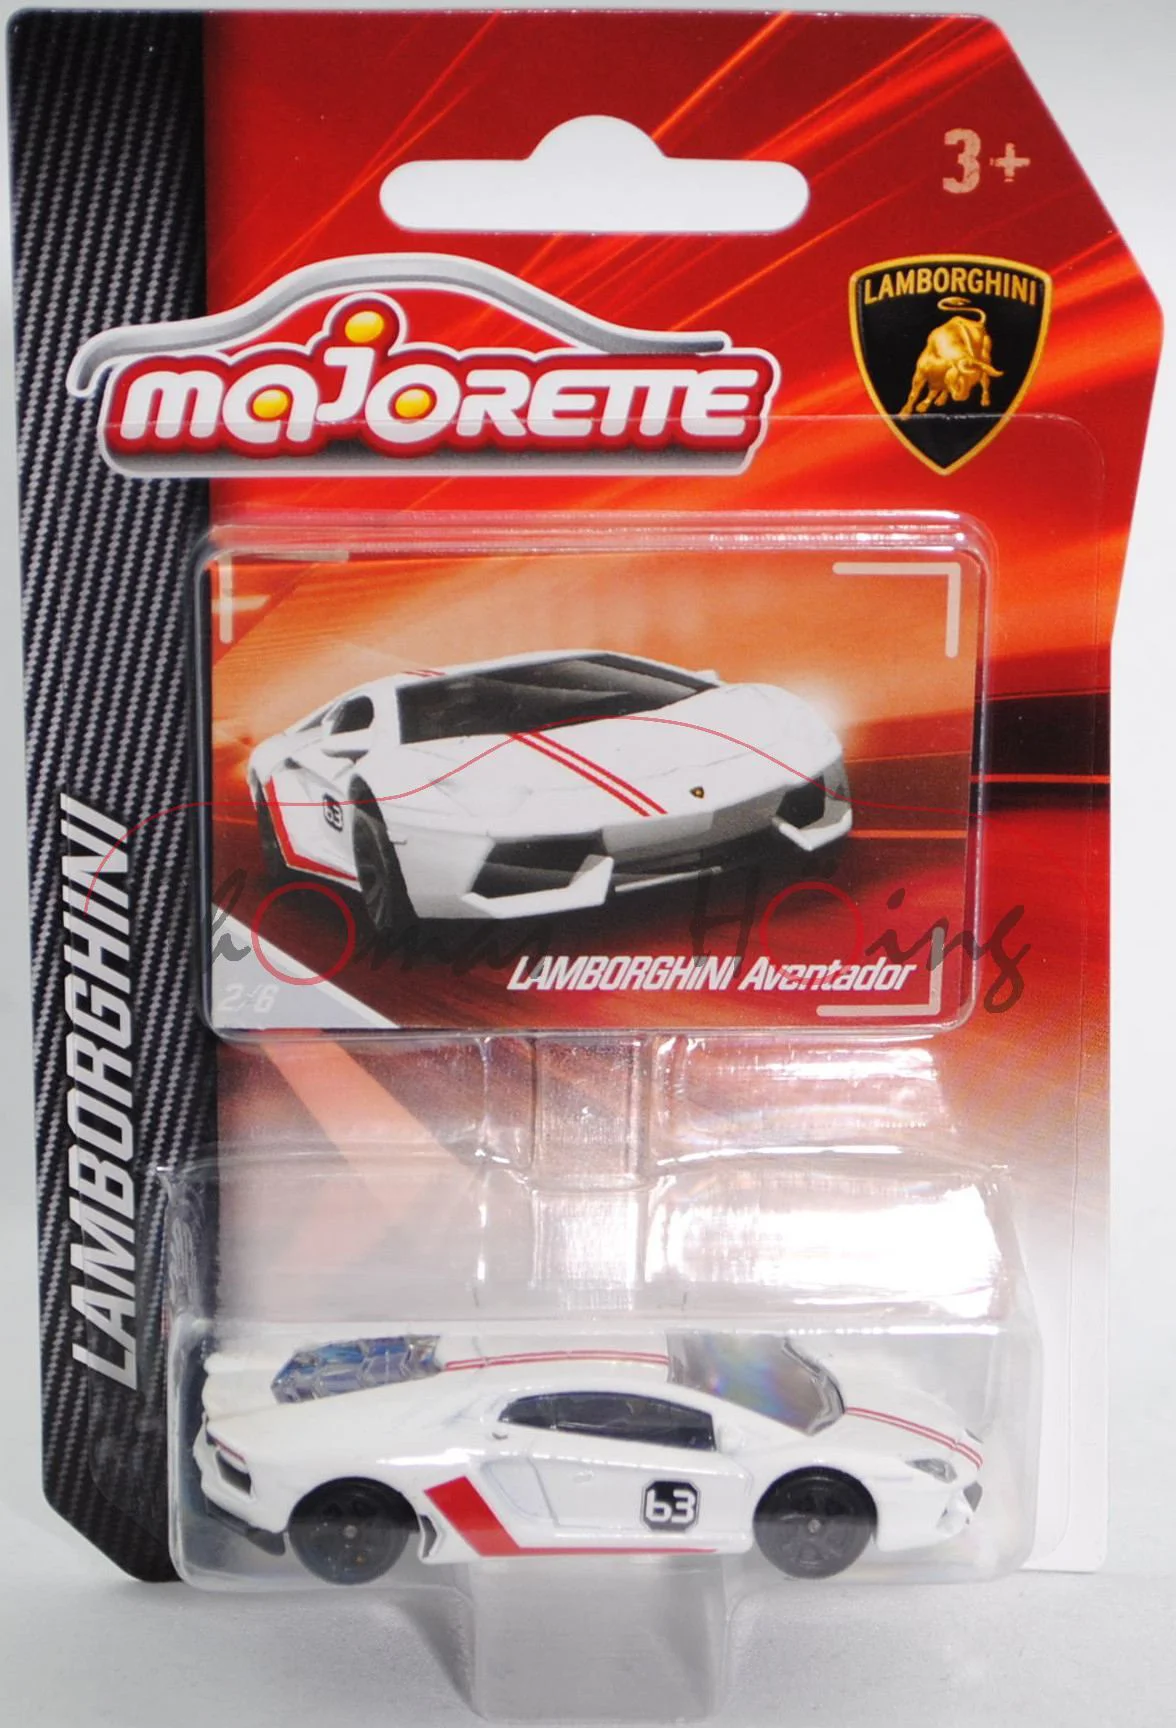 Masina Majorette Lamborghini, 7.5 cm